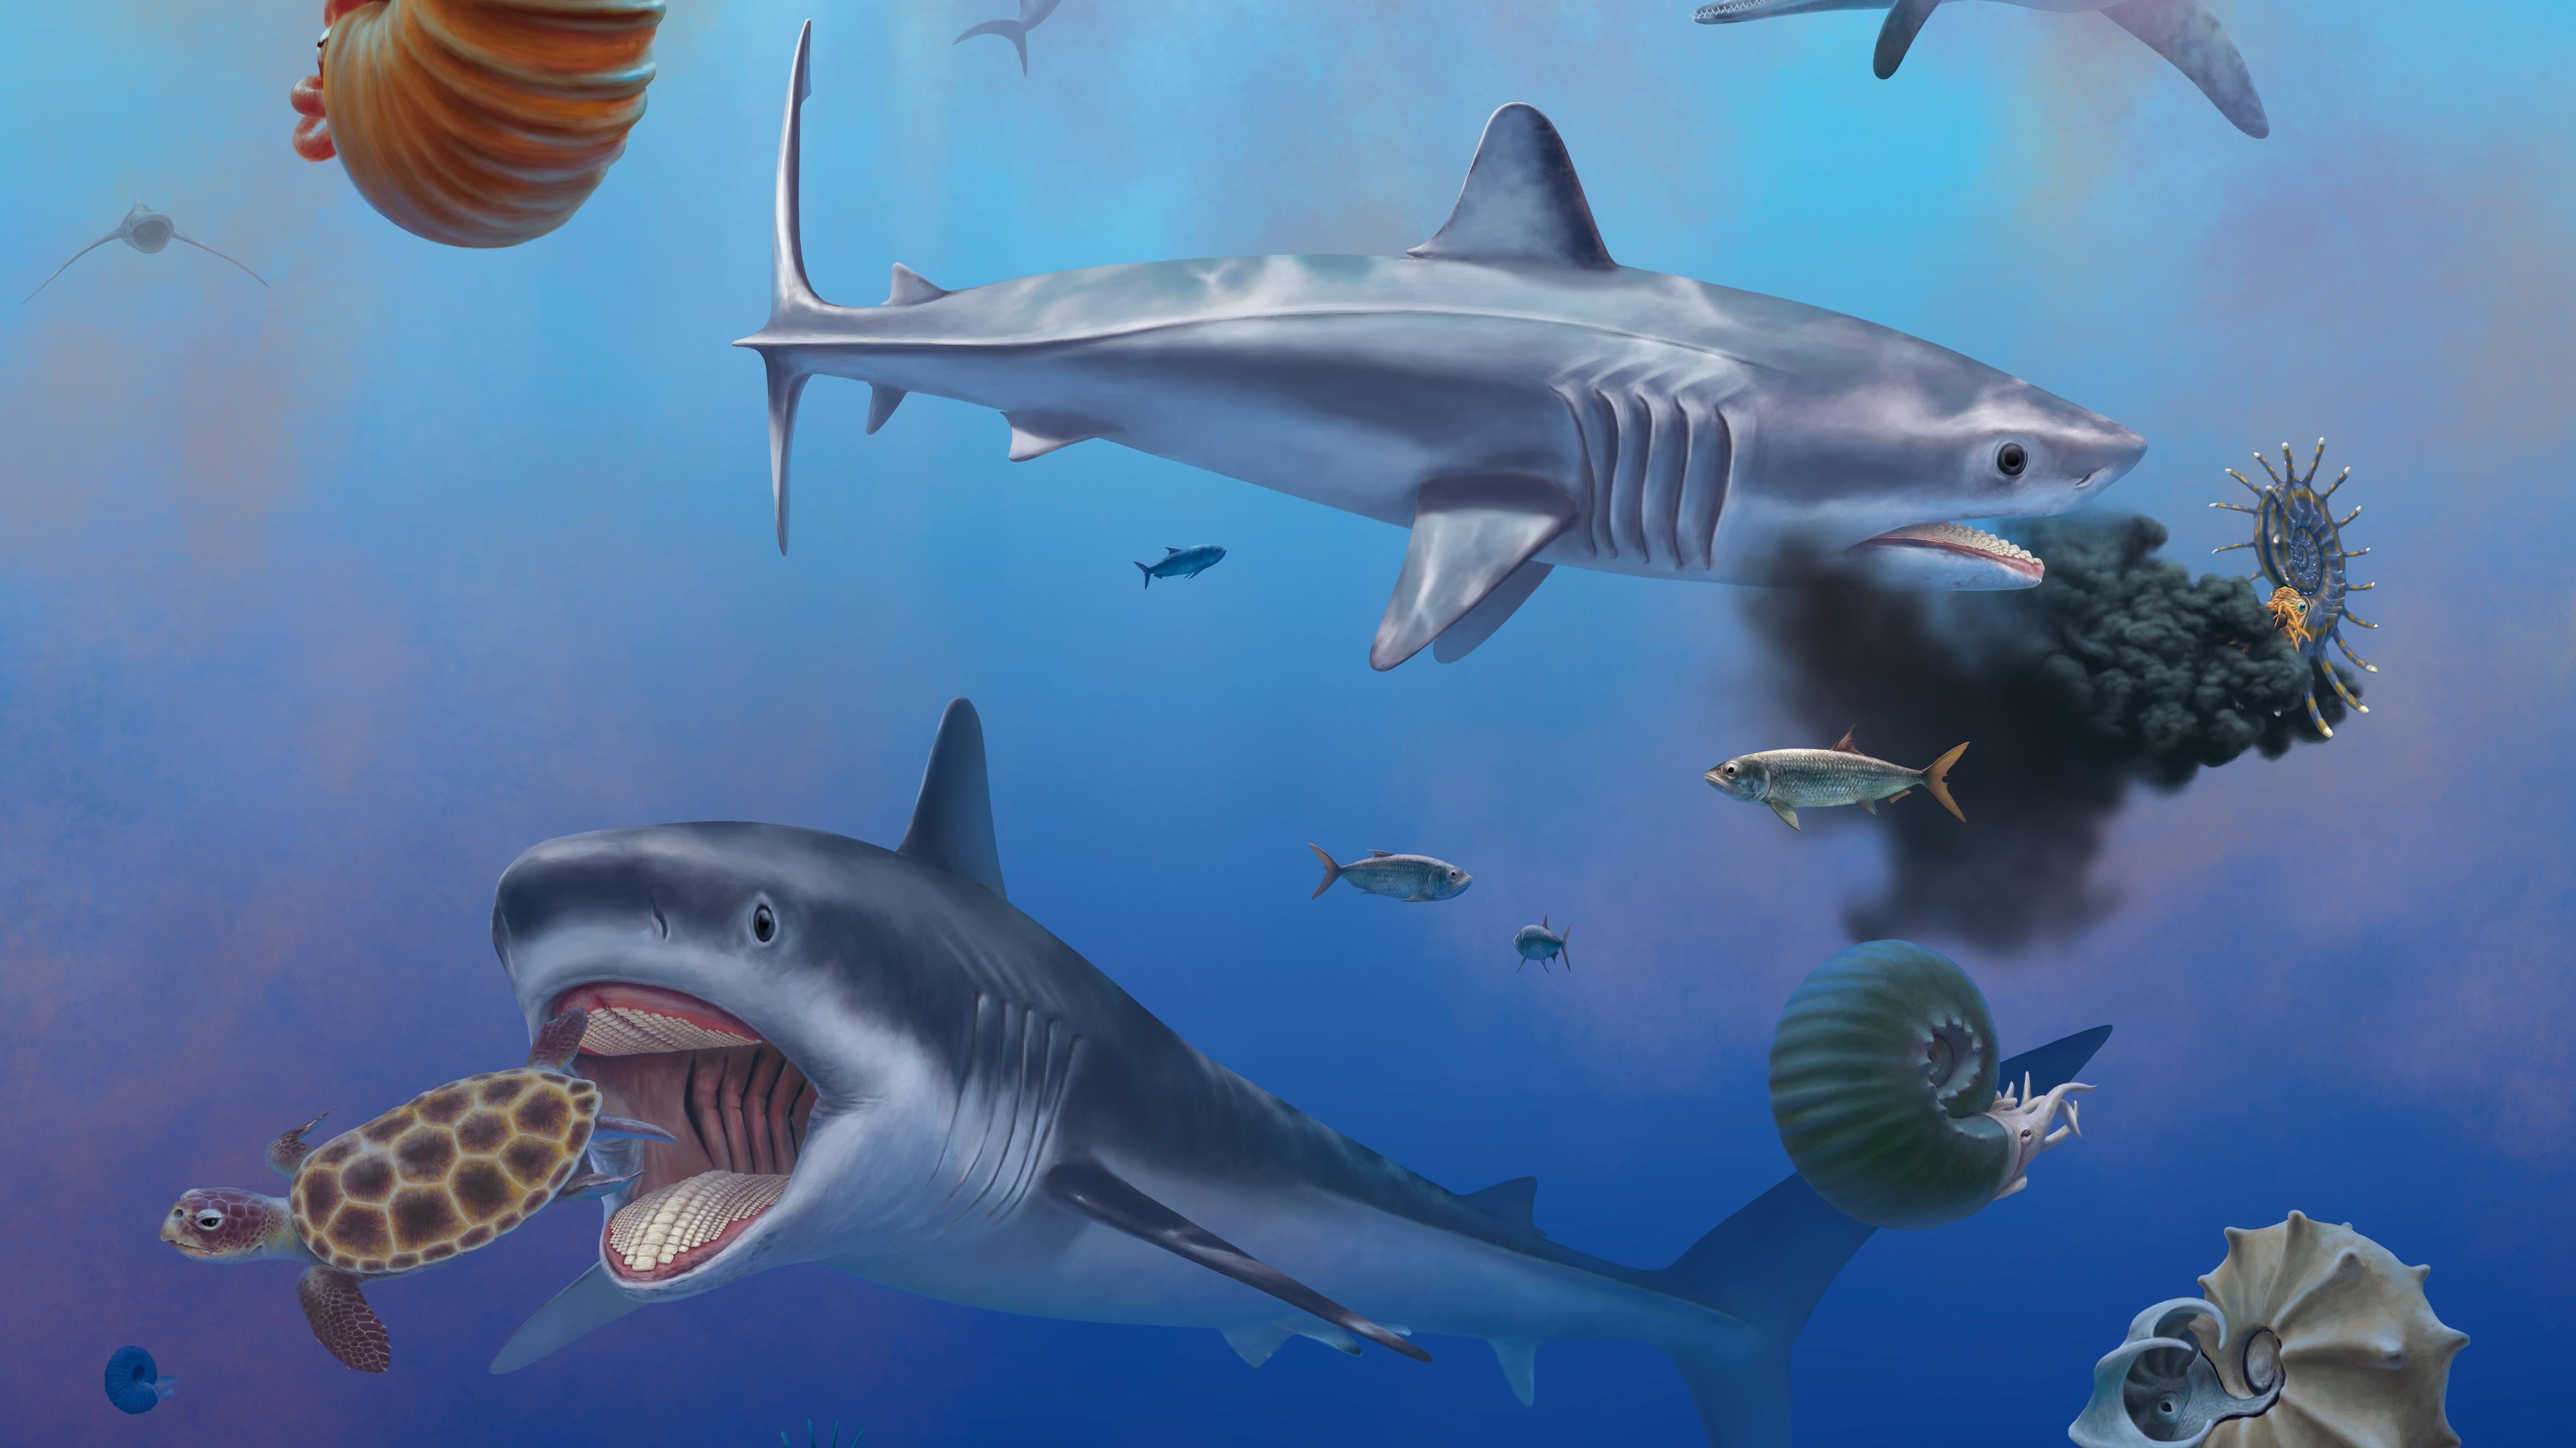 Палеонтологи расходятся во мнениях относительно того, что на самом деле представляет собой это изысканное ископаемое акулы